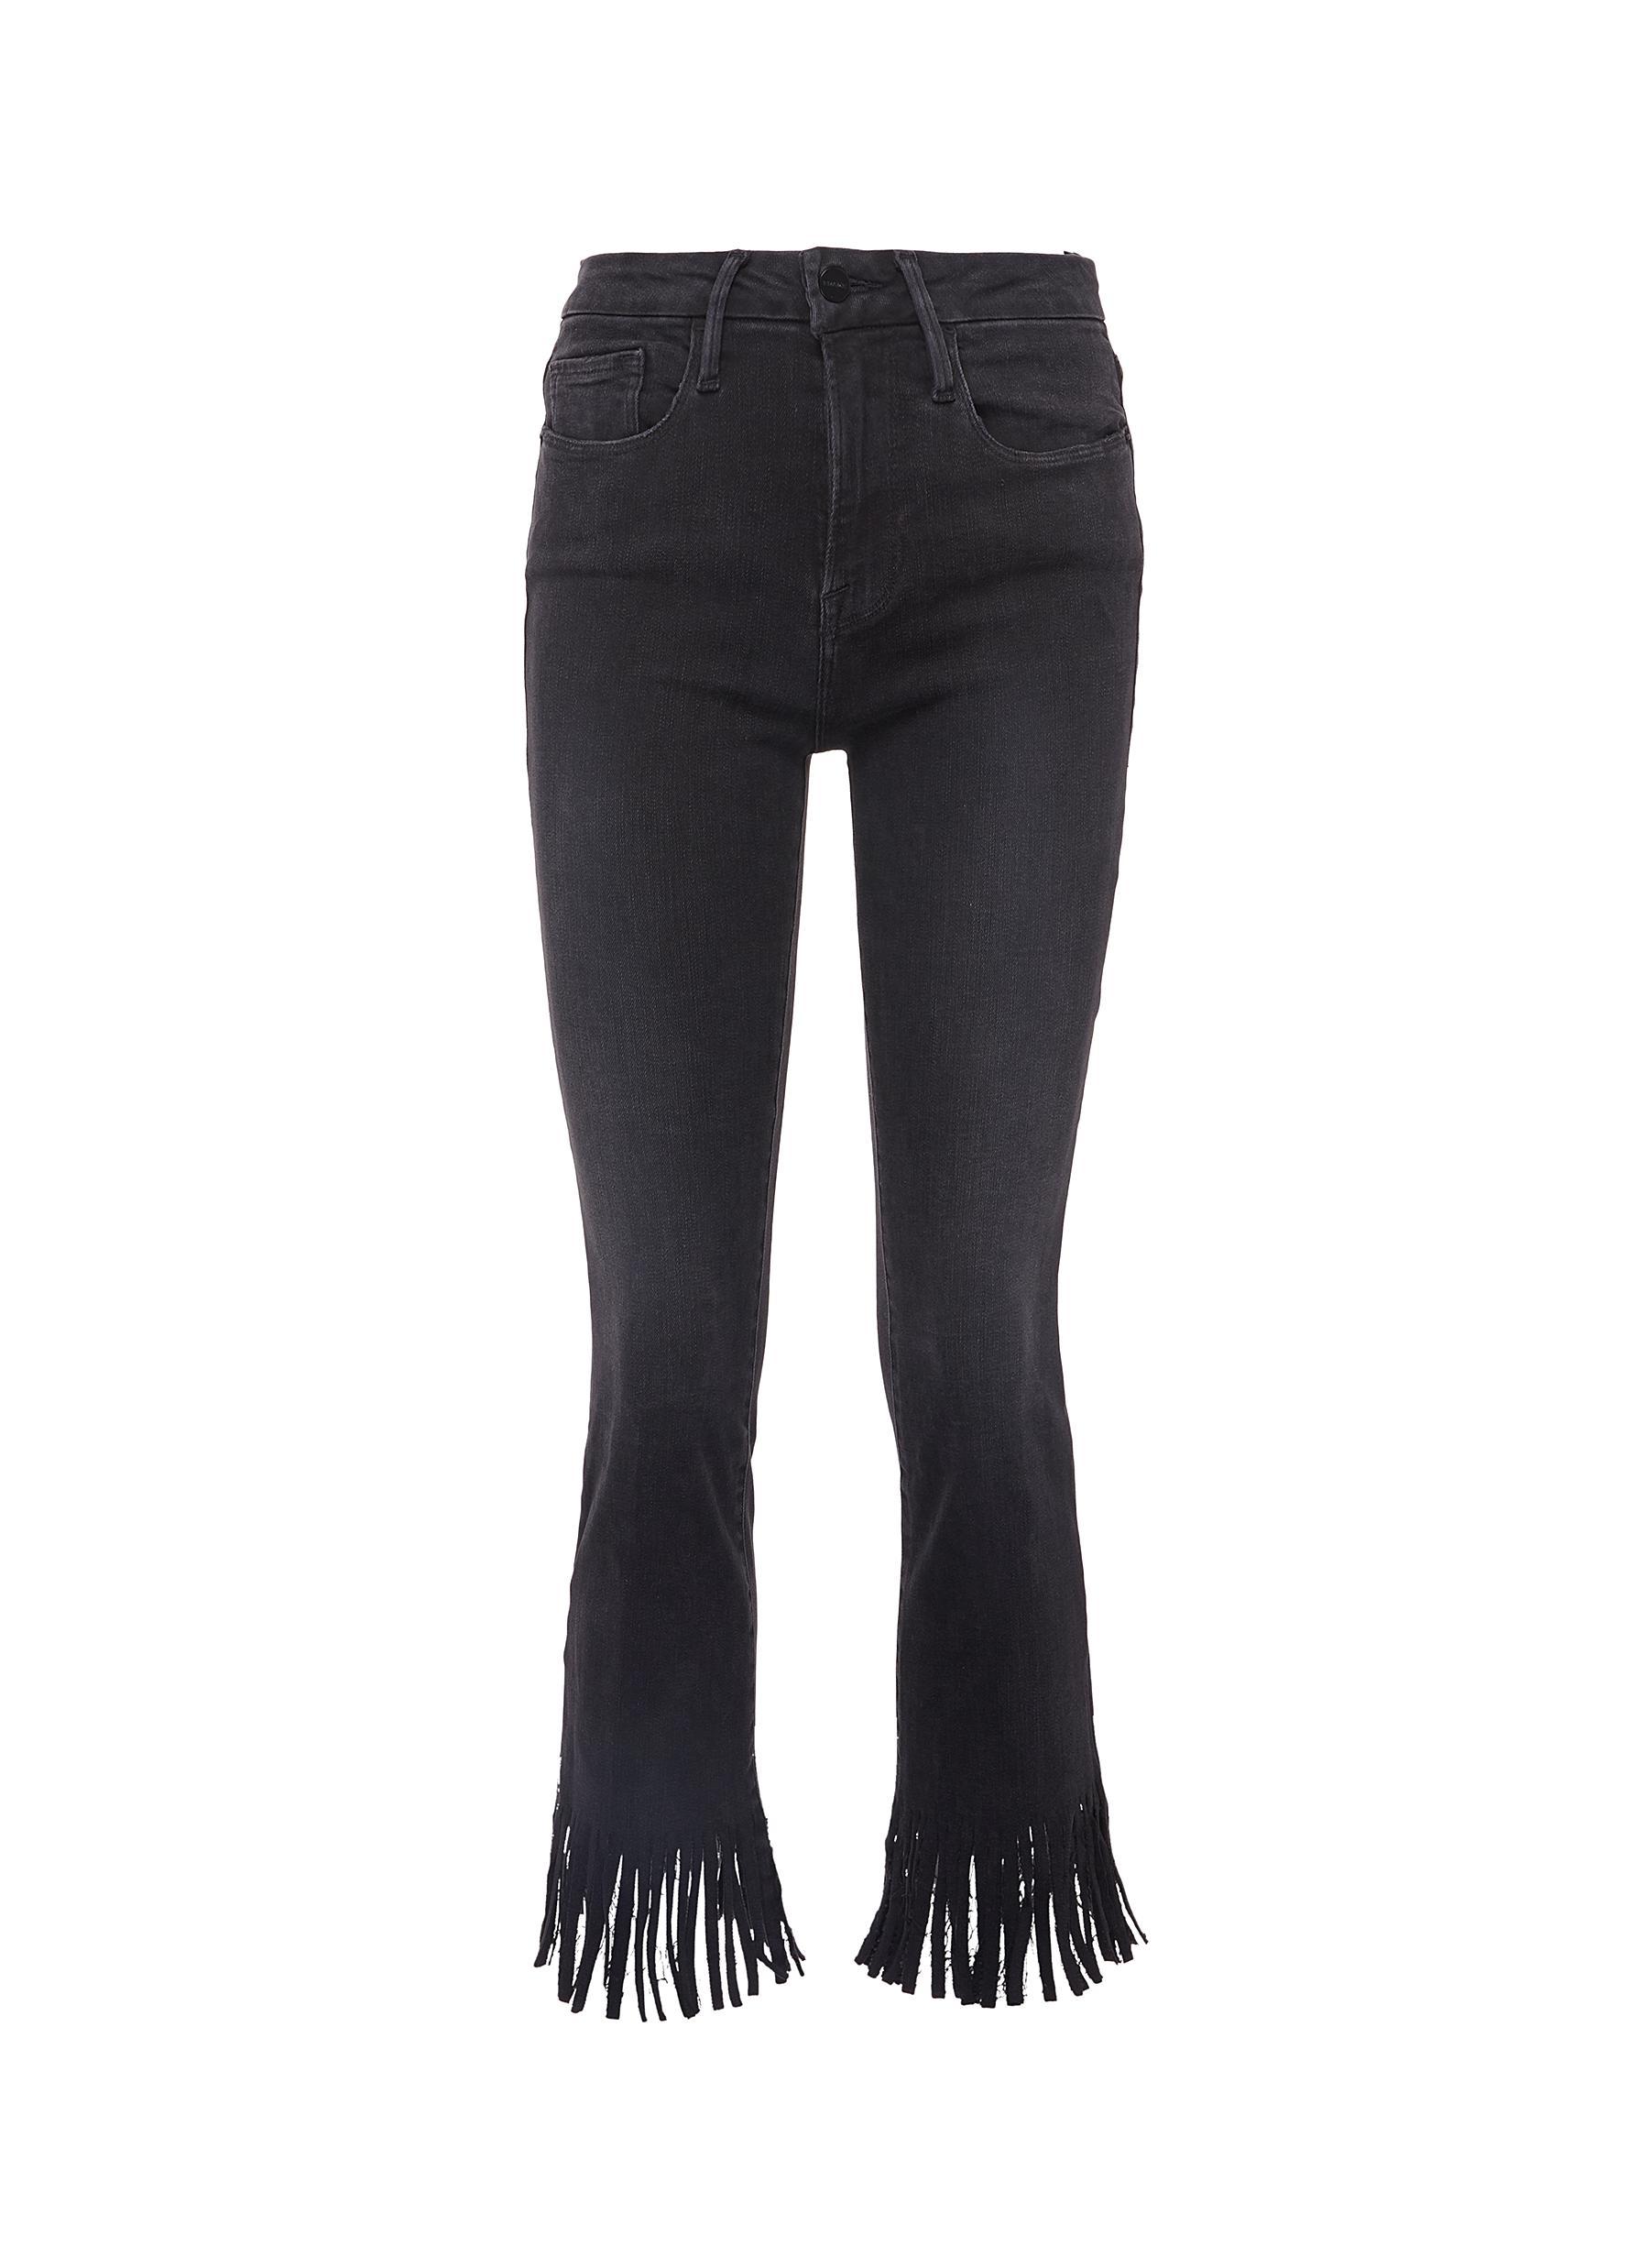 FRAME Le Crop Mini Boot Fringe Denim Jeans in Washed Black (Black) - Lyst